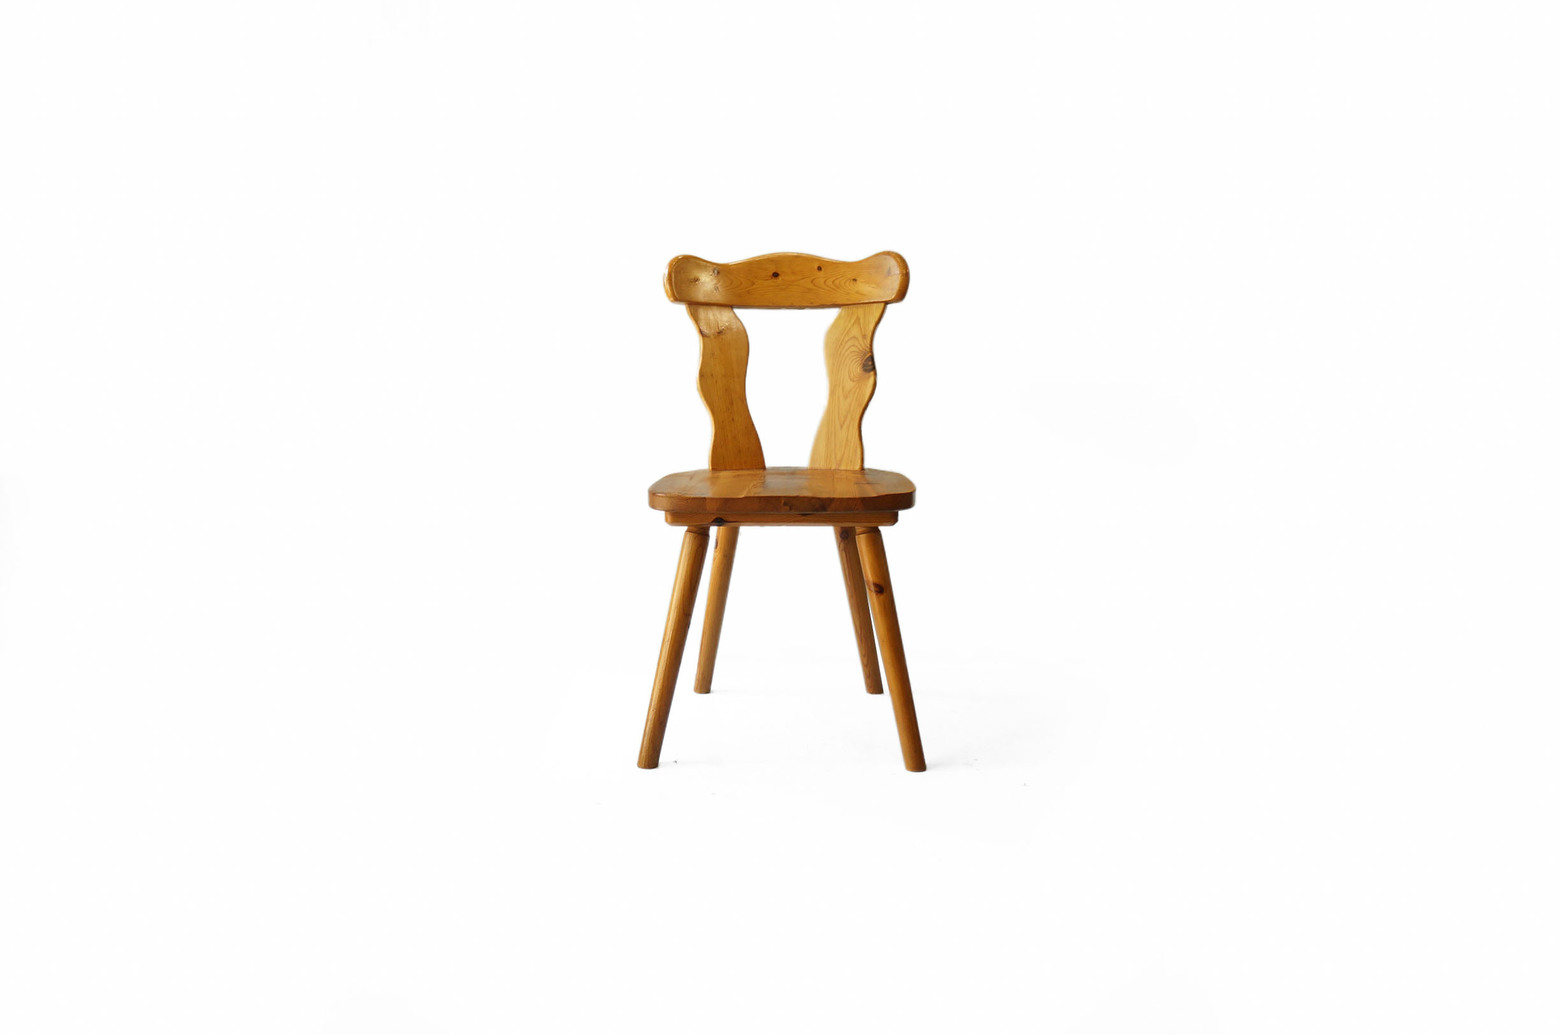 パイン材 ダイニングチェア カントリースタイル 椅子 ナチュラル/Pinewood Dining Chair Country Style